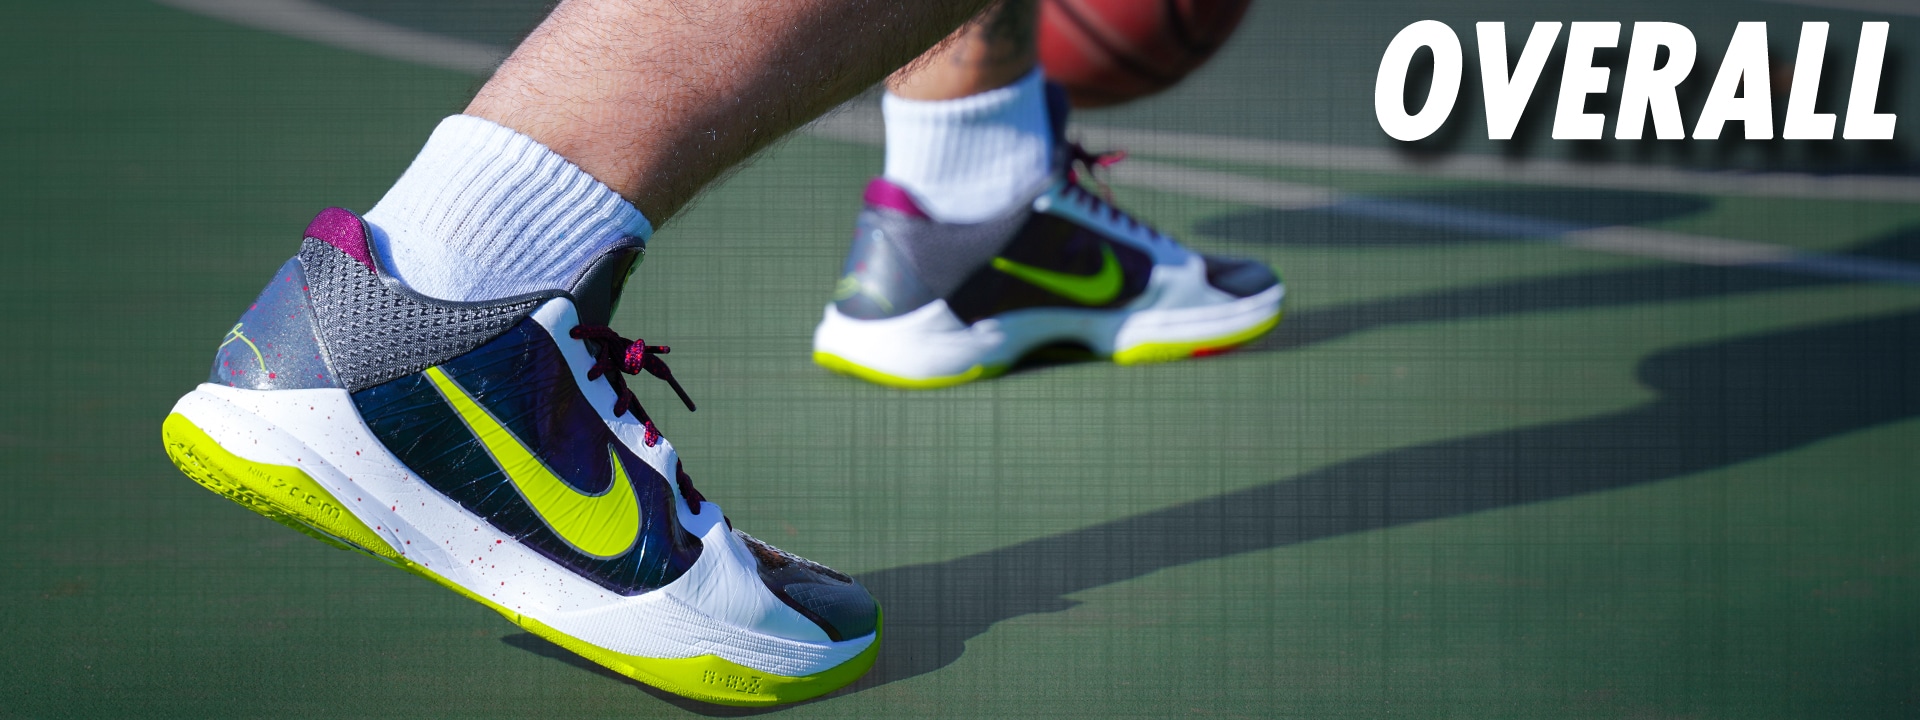 Nike Kobe 5 Protro: Overall